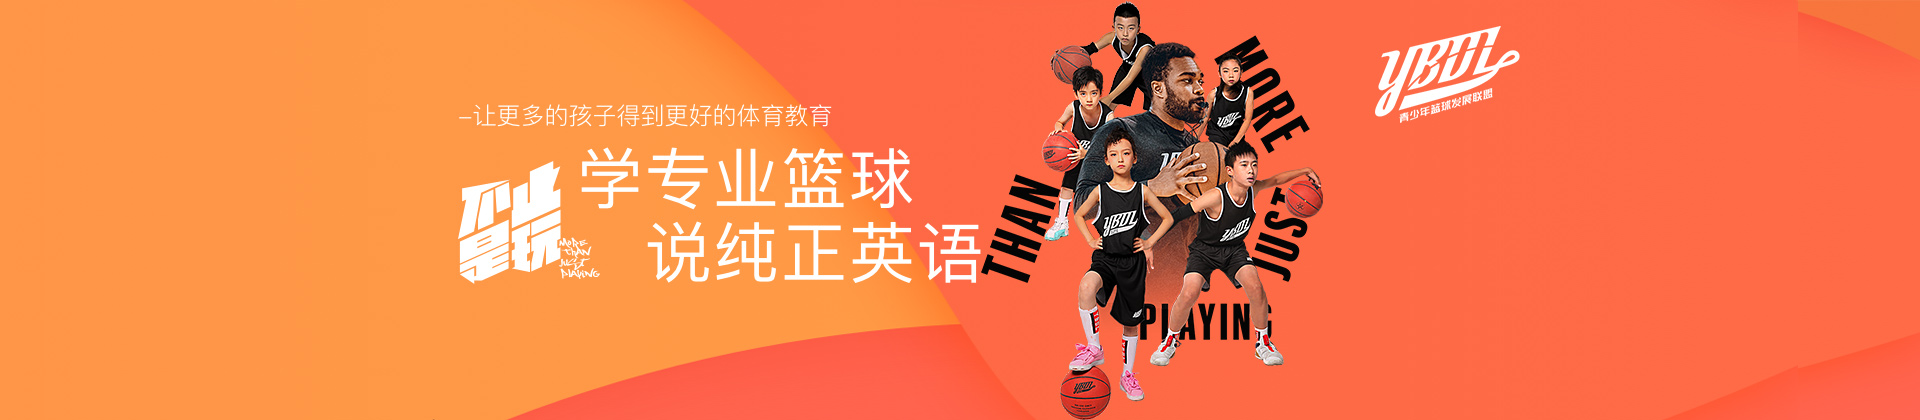 青岛HD-Sports美式篮球俱乐部